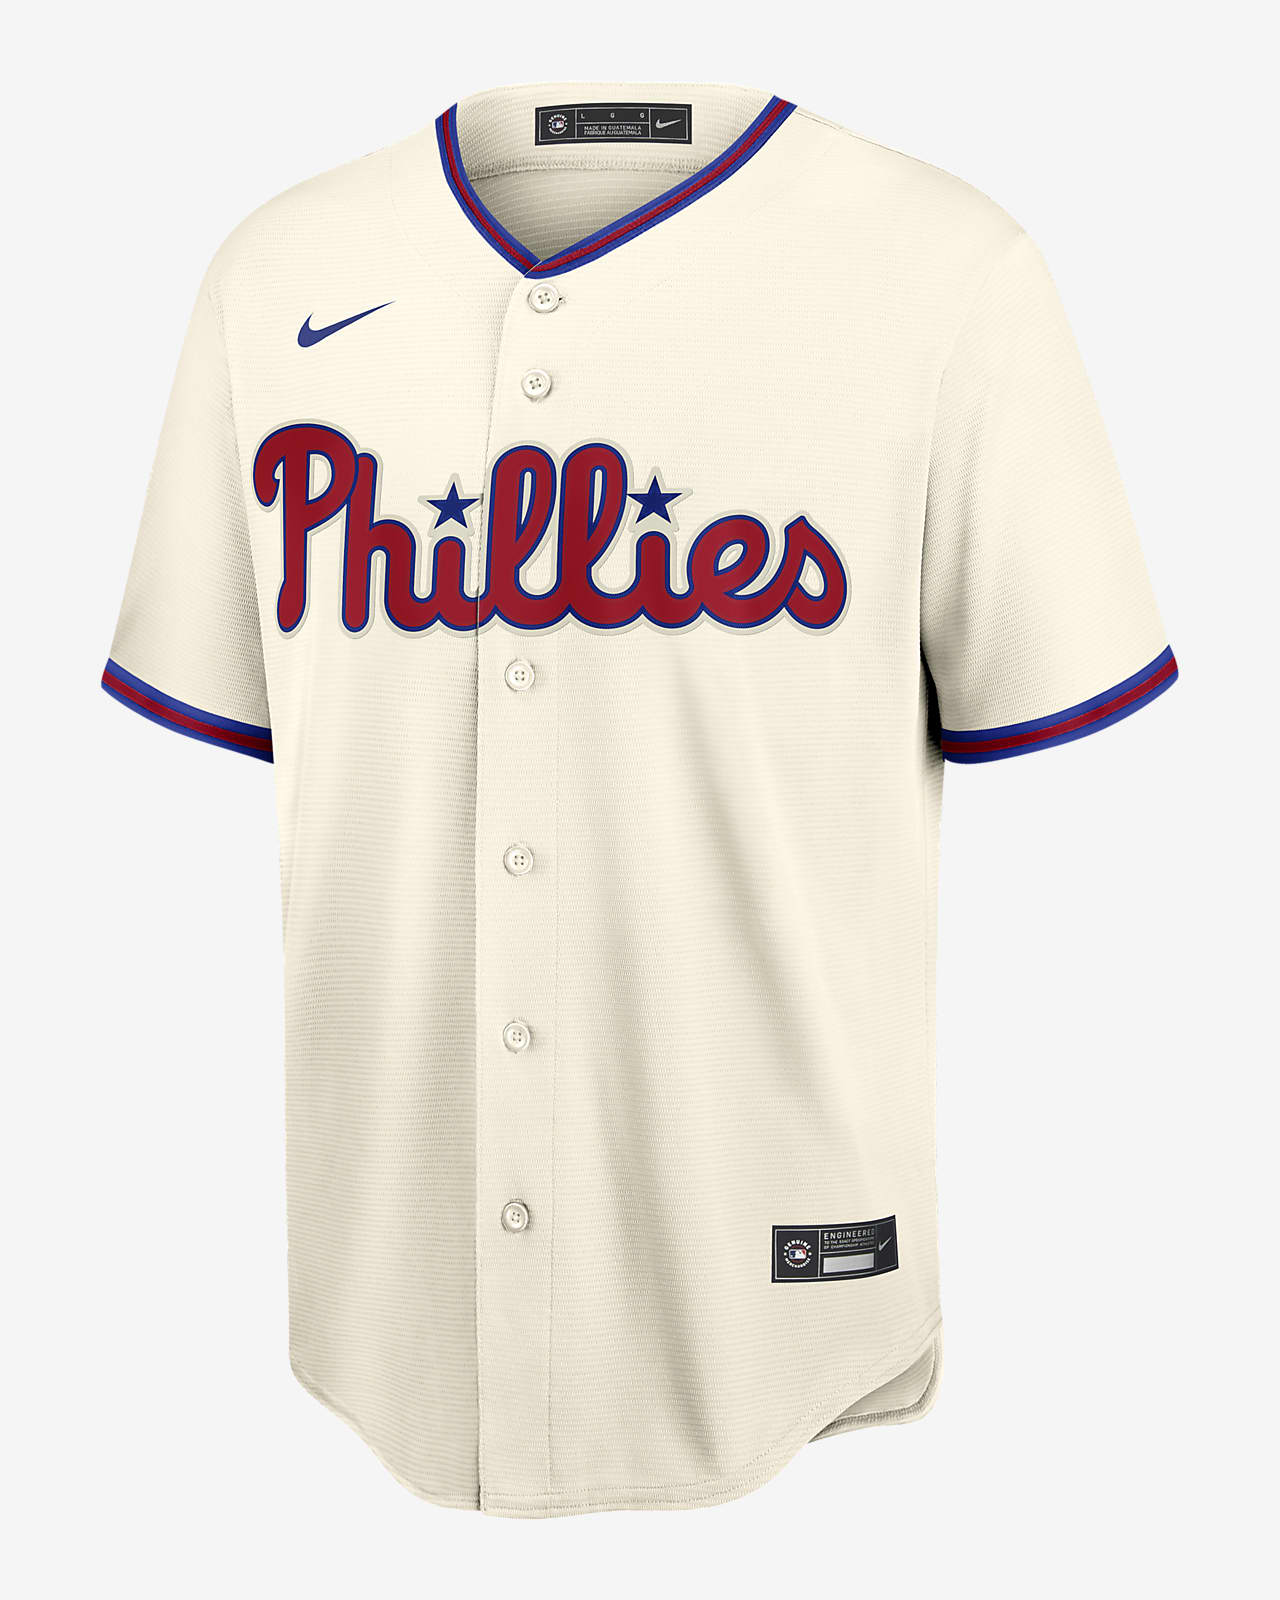 Philadelphia Phillies jersey deals